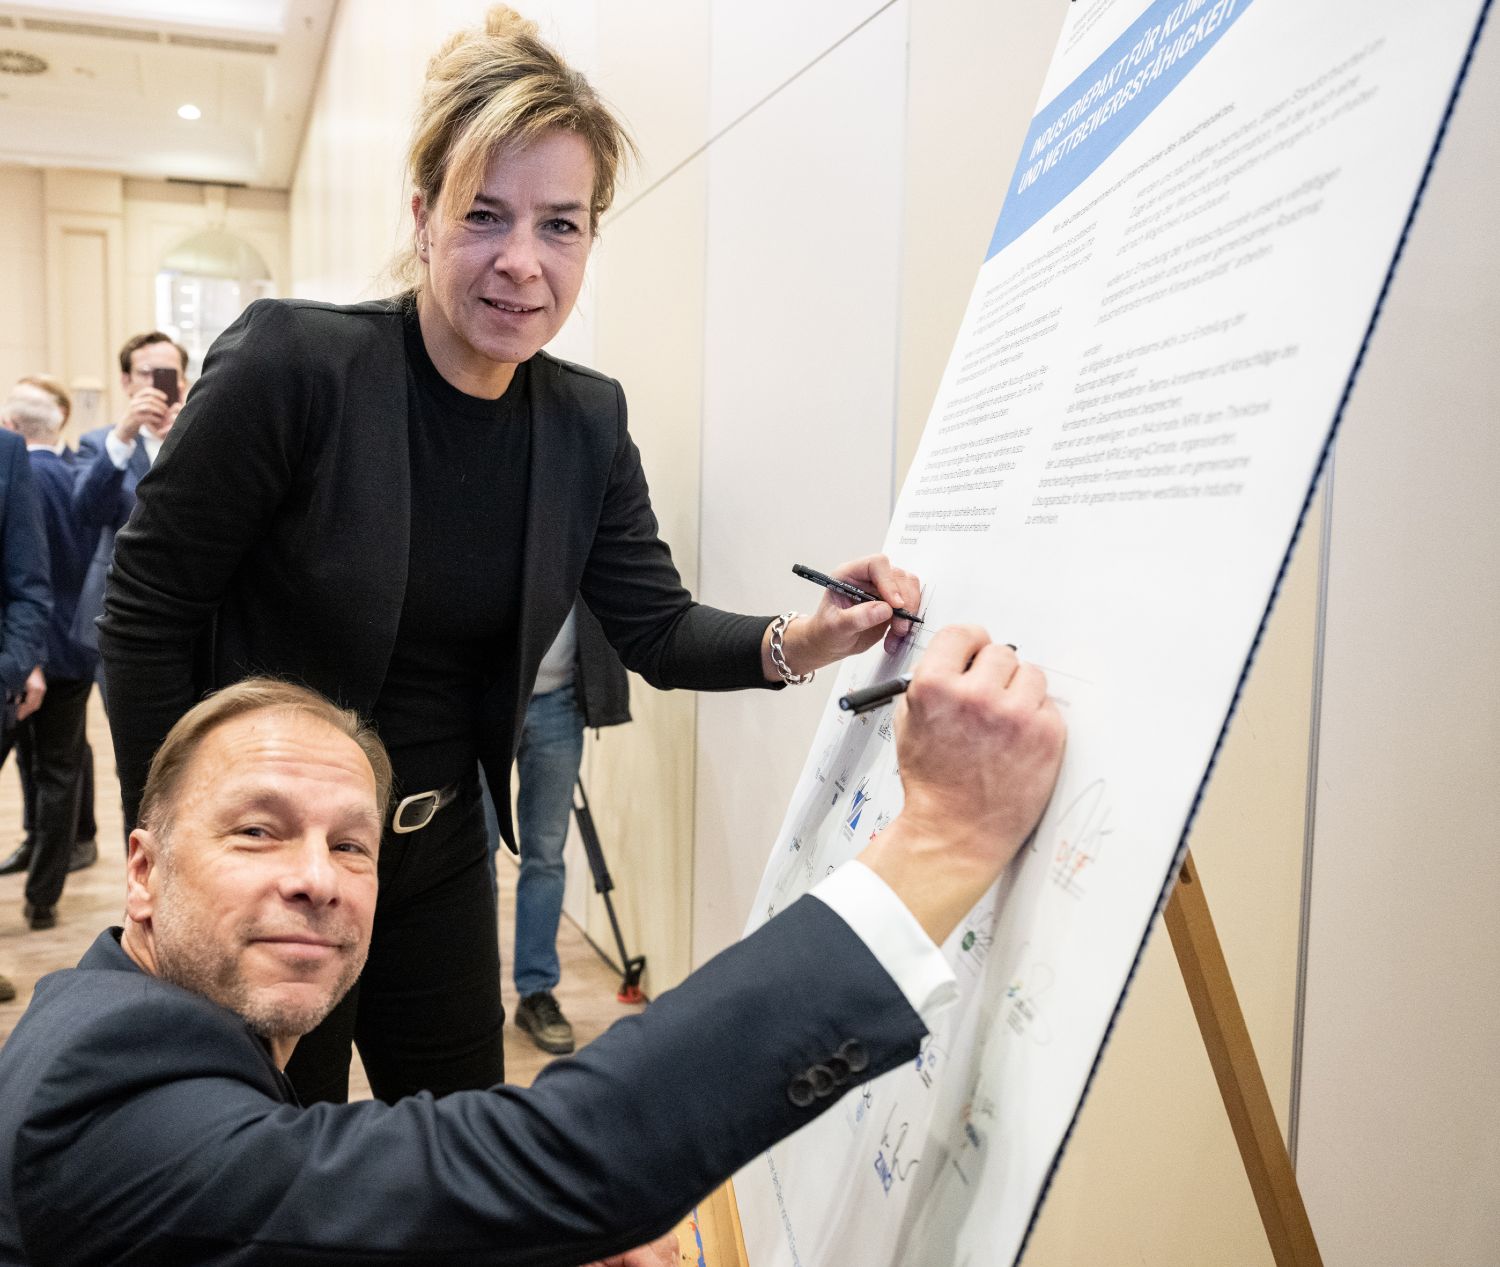 Ministerin Mona Neubauer und Ulf C. Reichardt, der Vorsitzende von NRW.Energy4Climate, unterzeichnen den Industriepakt Nordrhein-Westfalen.